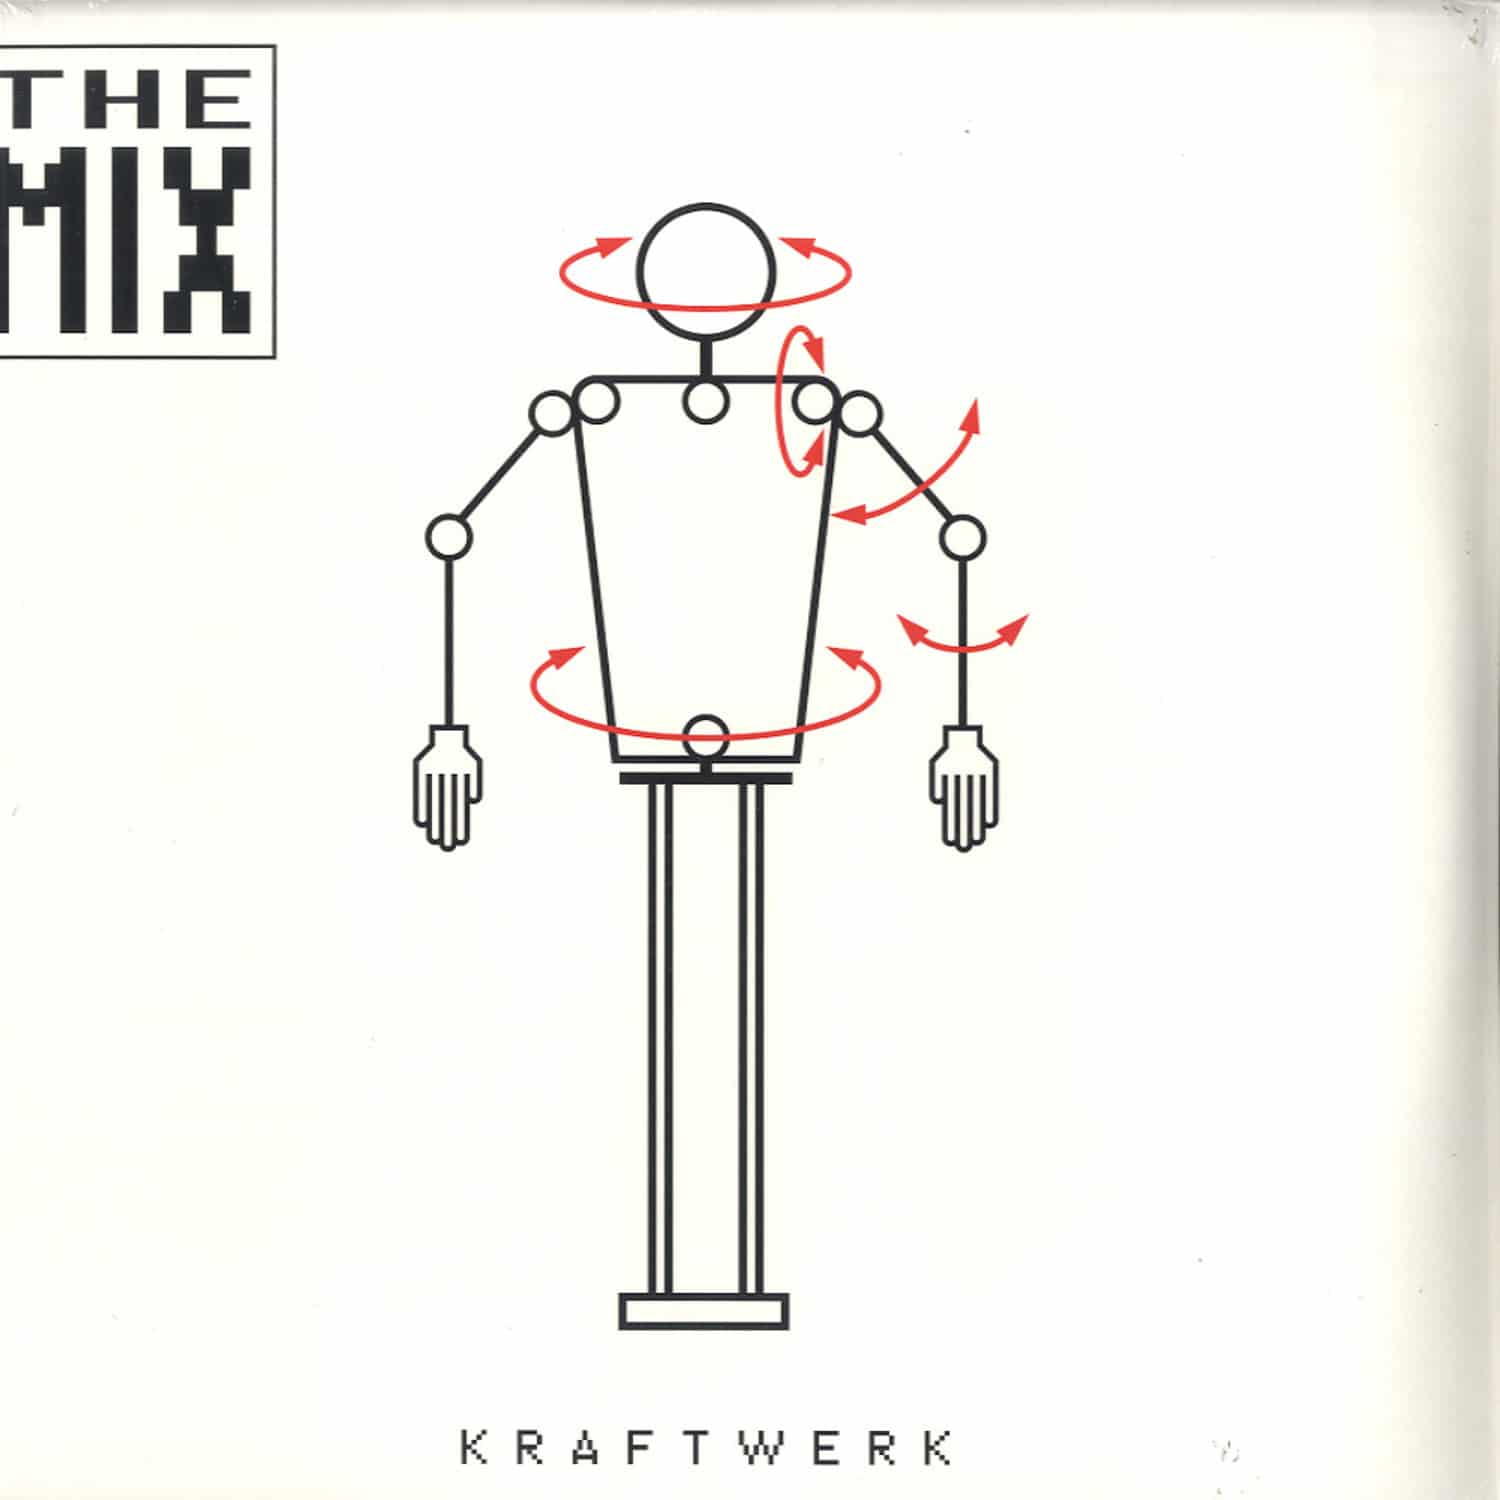 Kraftwerk - THE MIX 